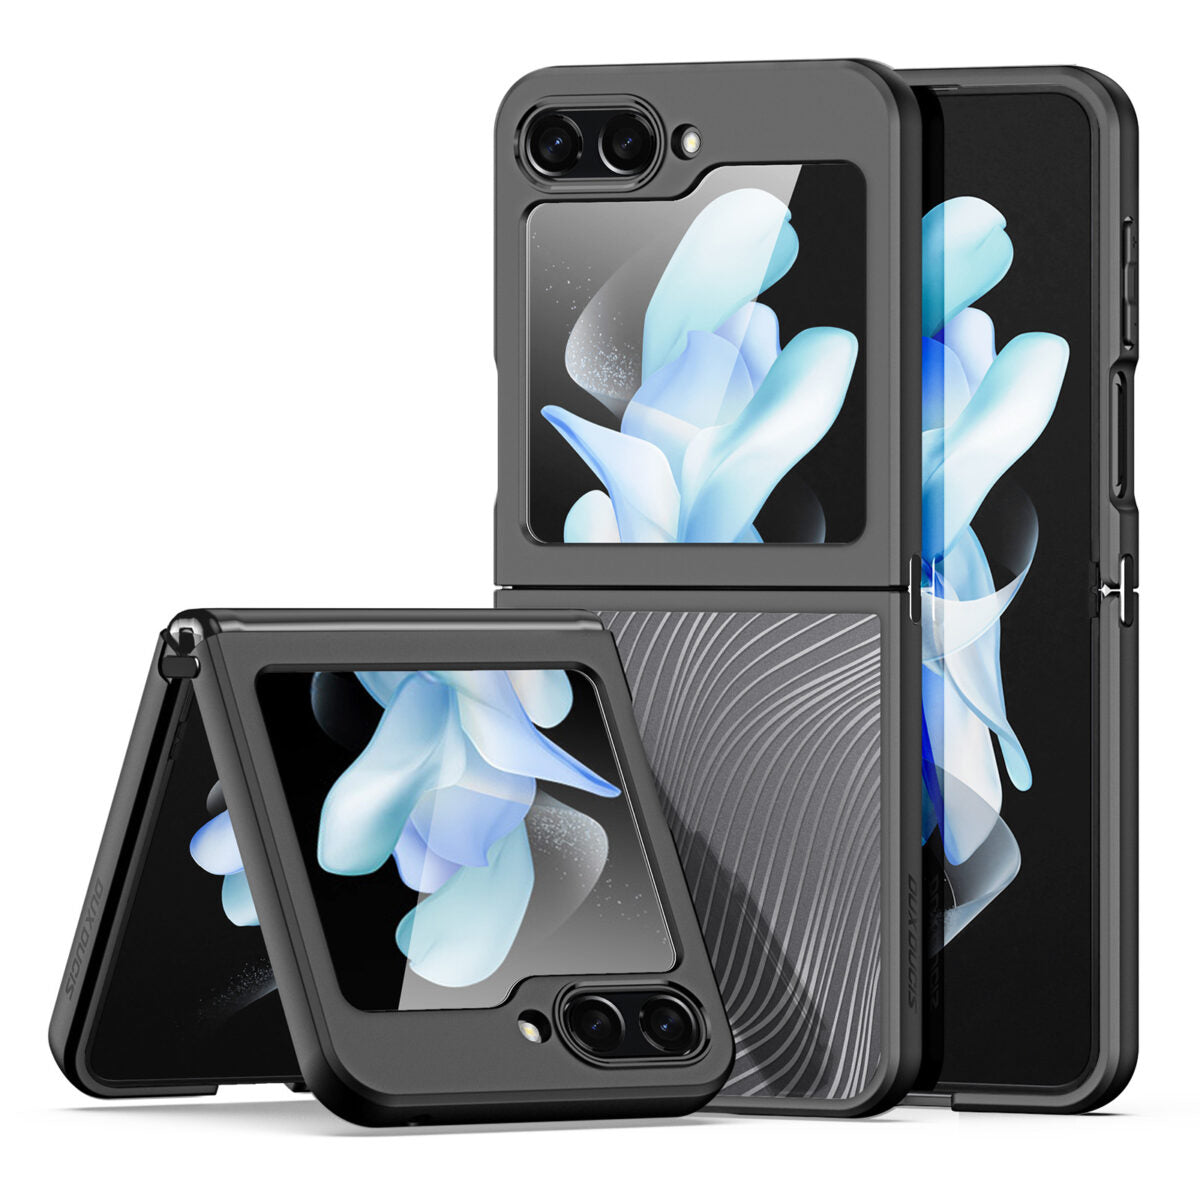 Dux Ducis Aimo Series Case Samsung z Flip 5